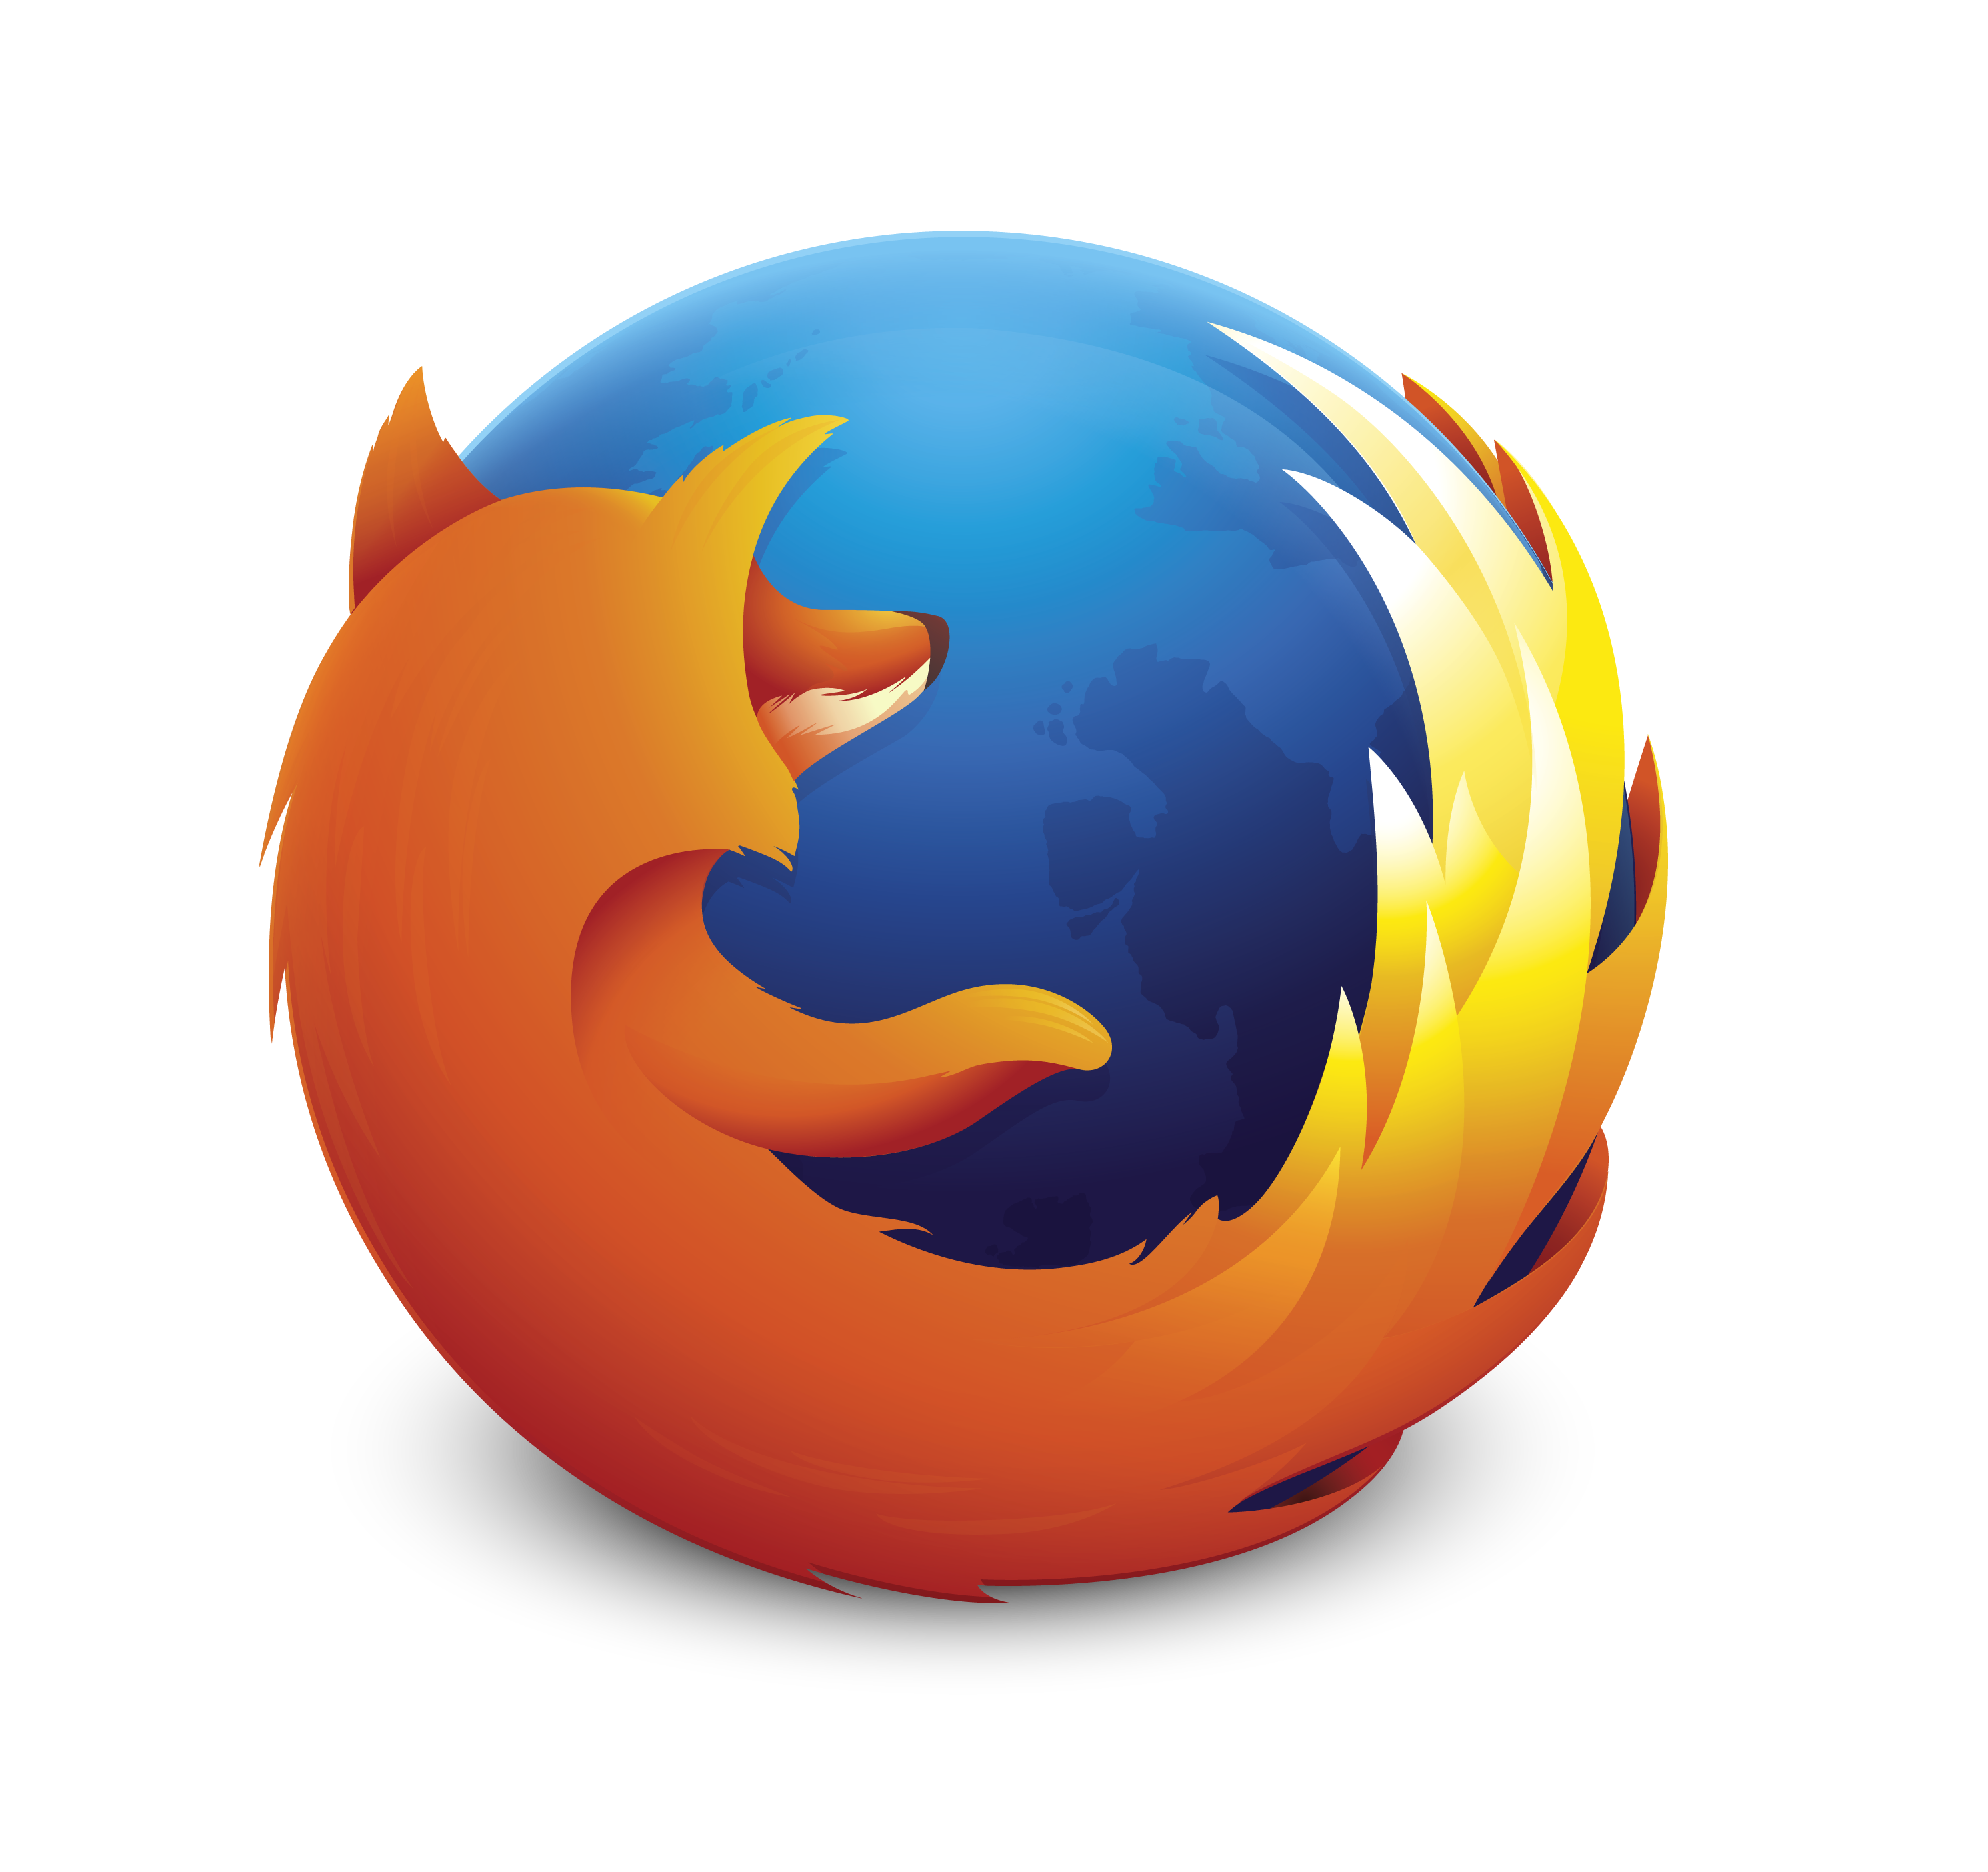 Telefony s Firefox OS budou letos i u nás